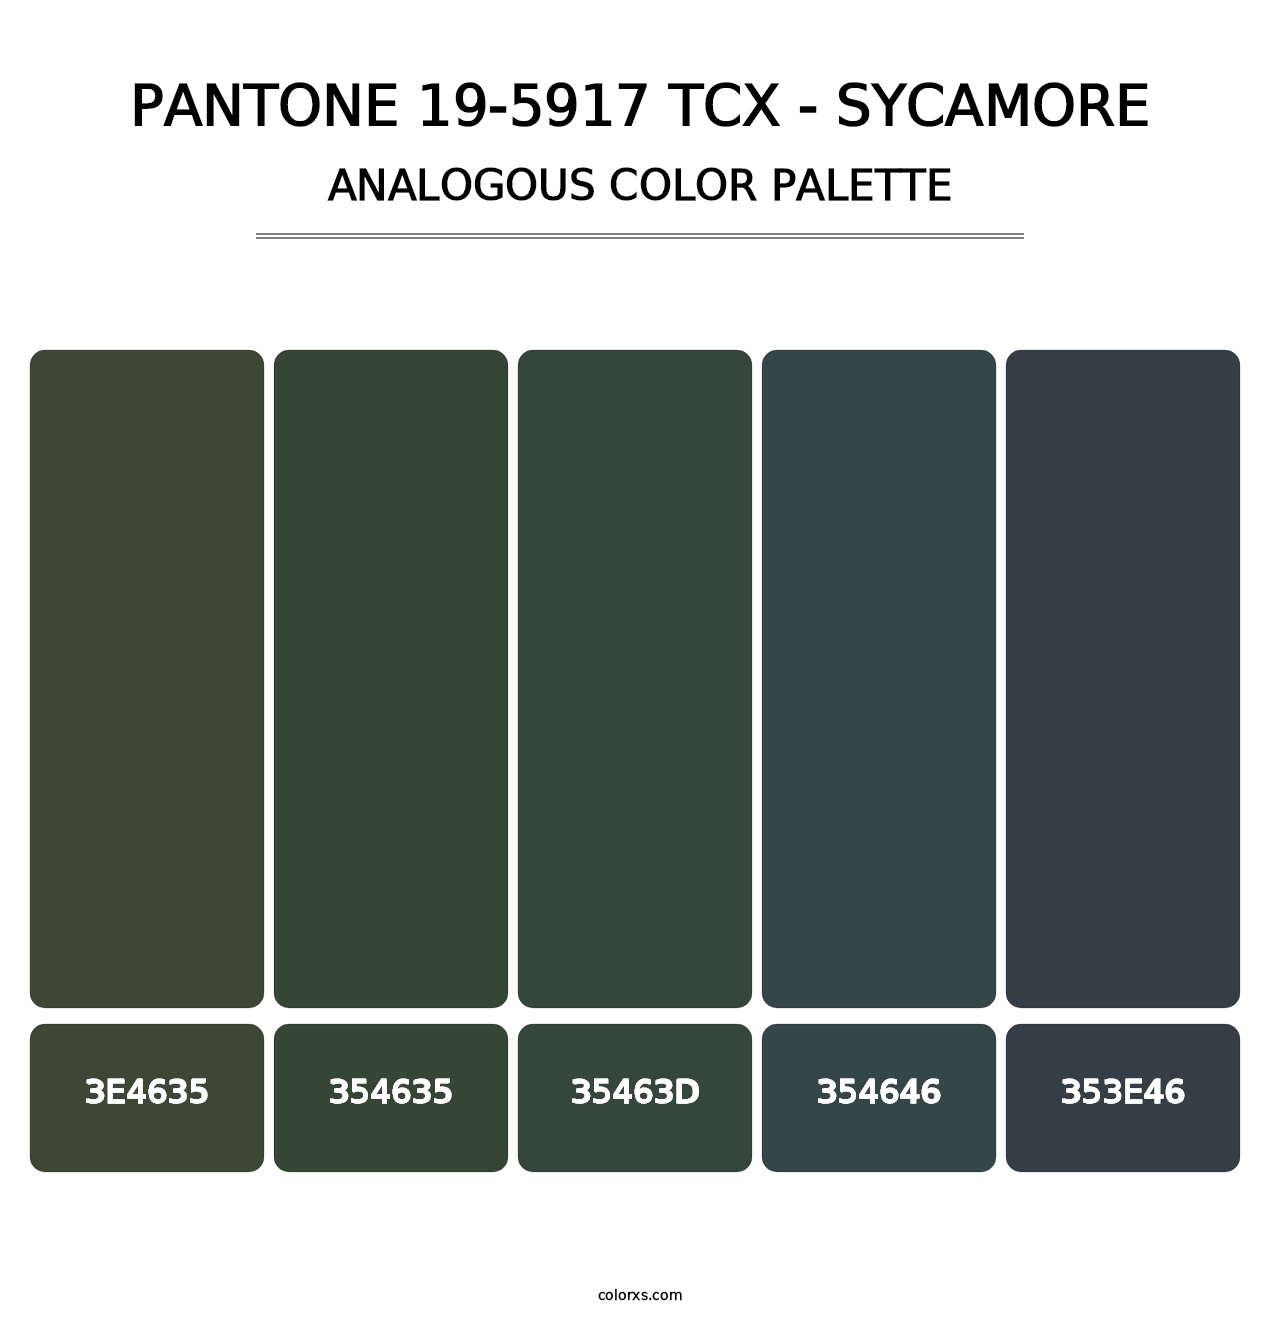 PANTONE 19-5917 TCX - Sycamore - Analogous Color Palette